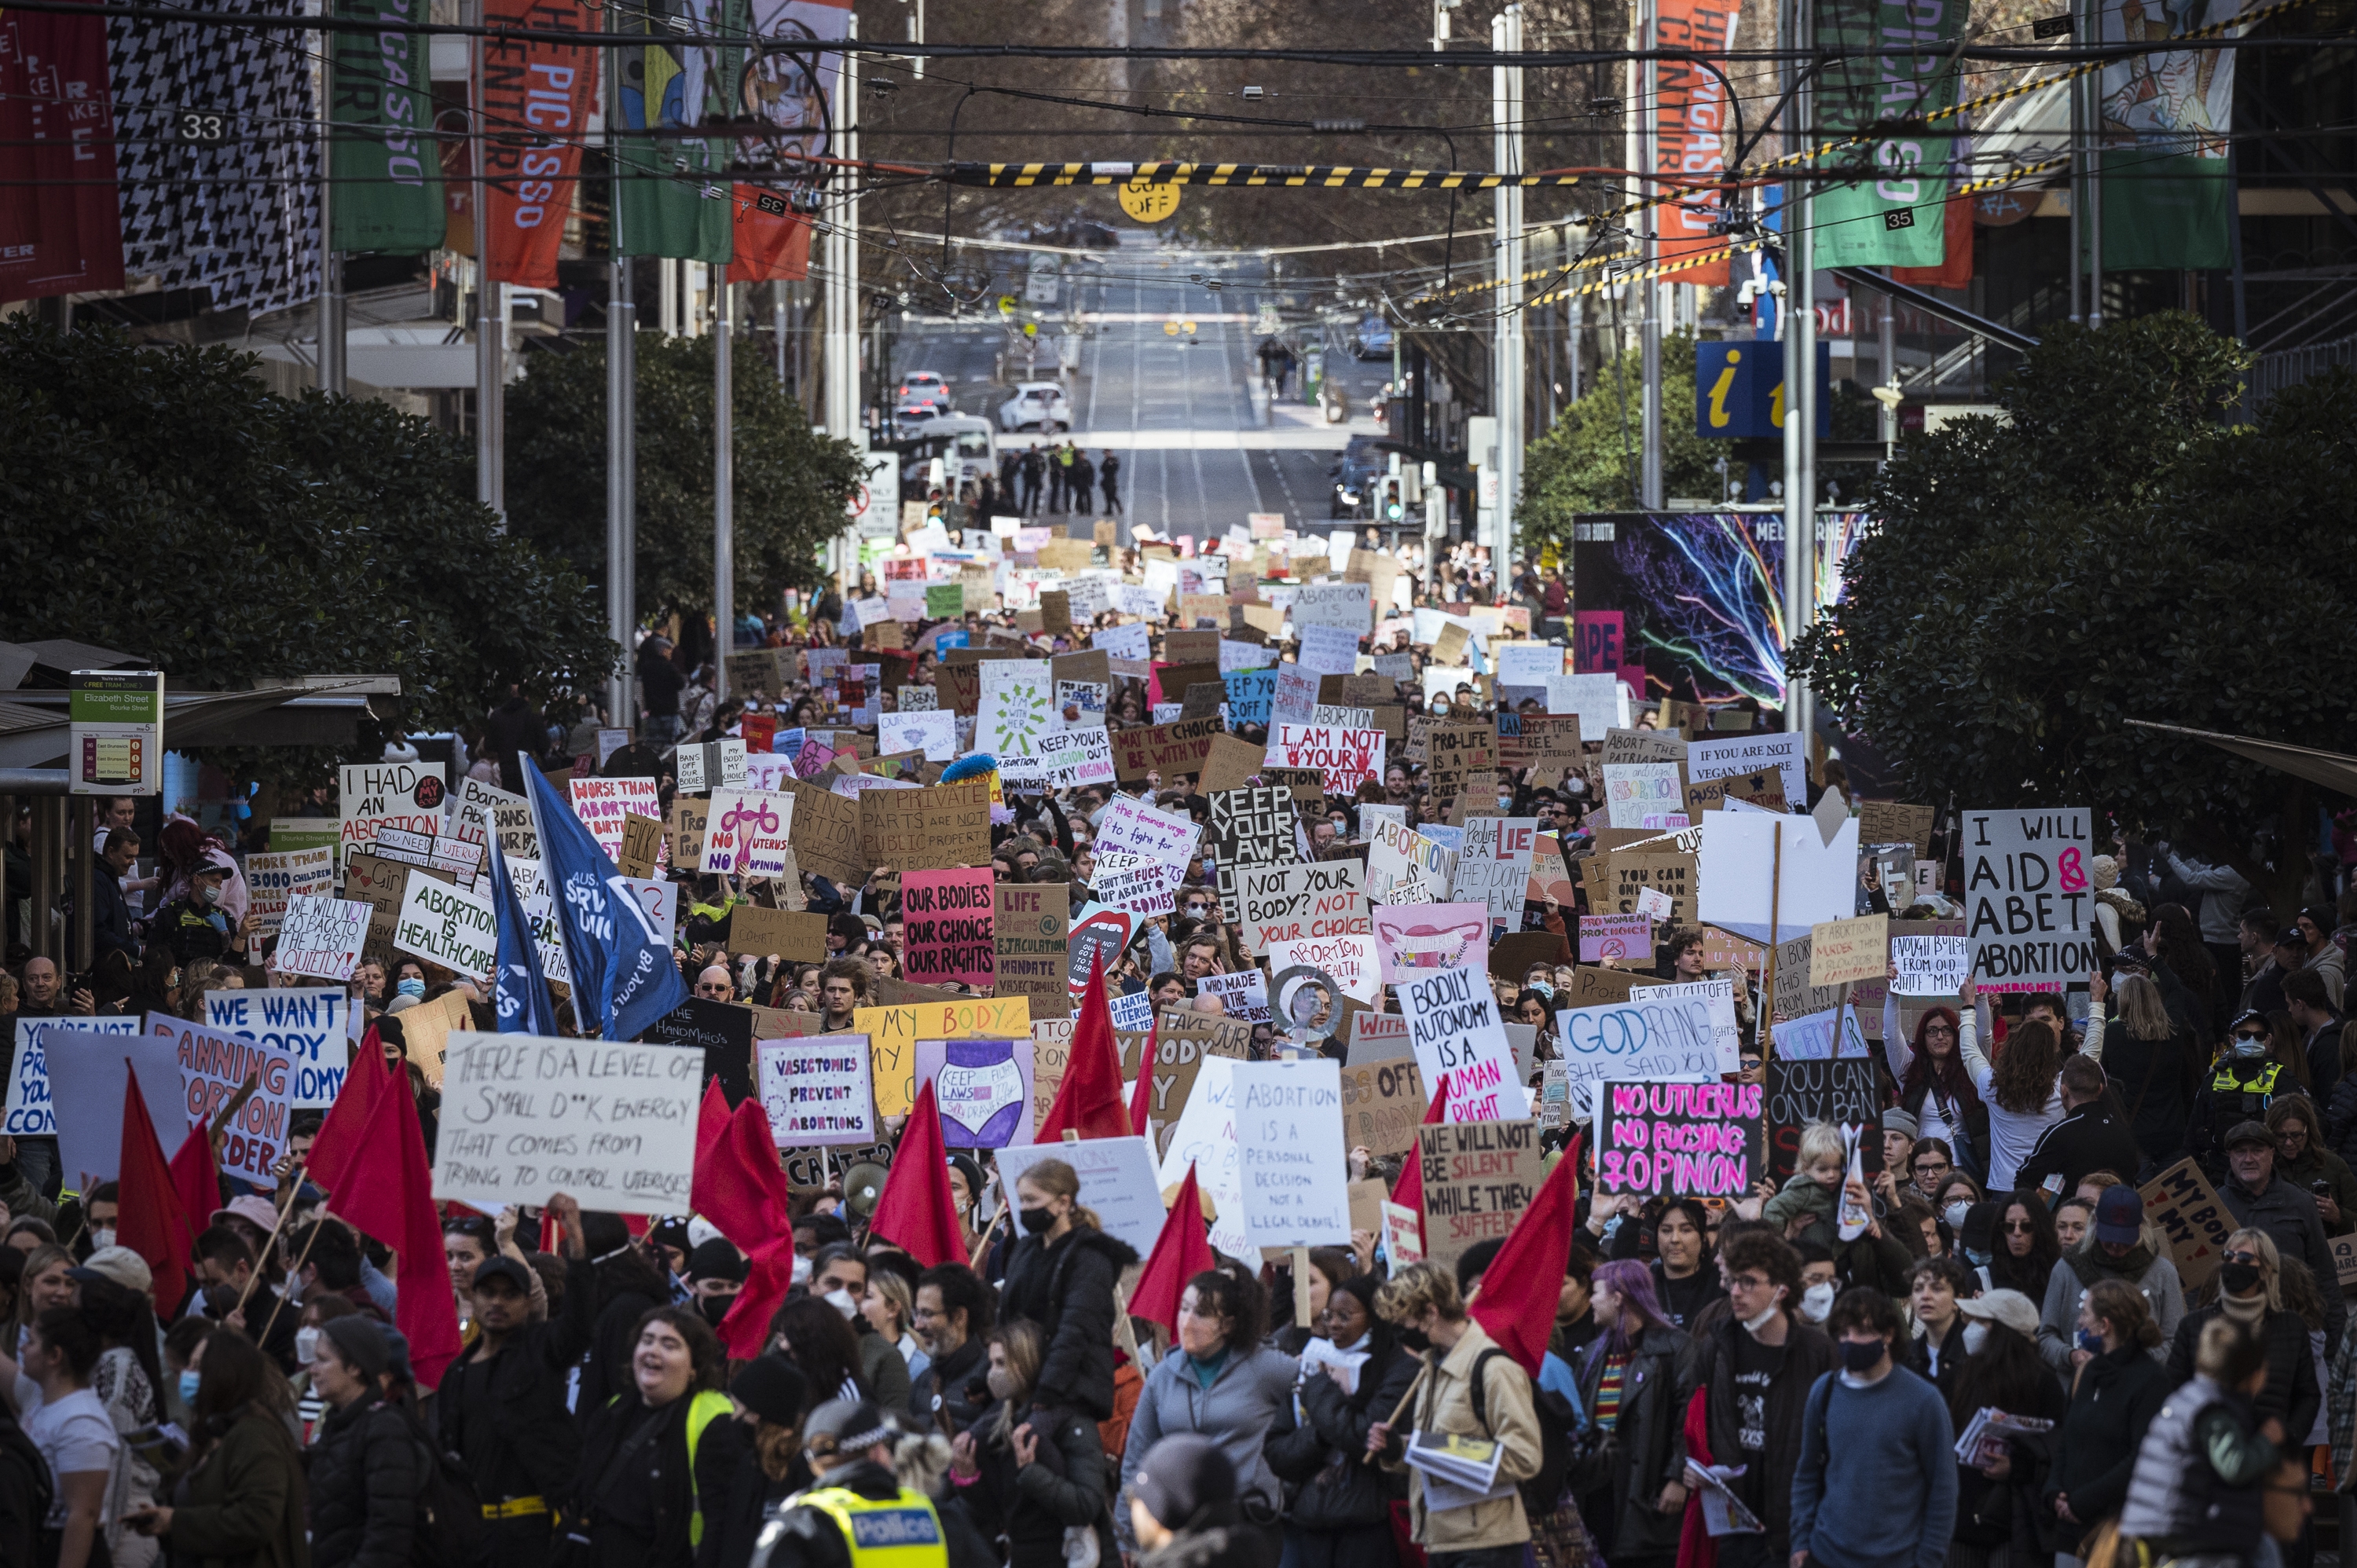 02/07/22 Miles de furiosos partidarios del derecho al aborto protestaron hoy en Melbourne.  Fotografía de Chris Hopkins